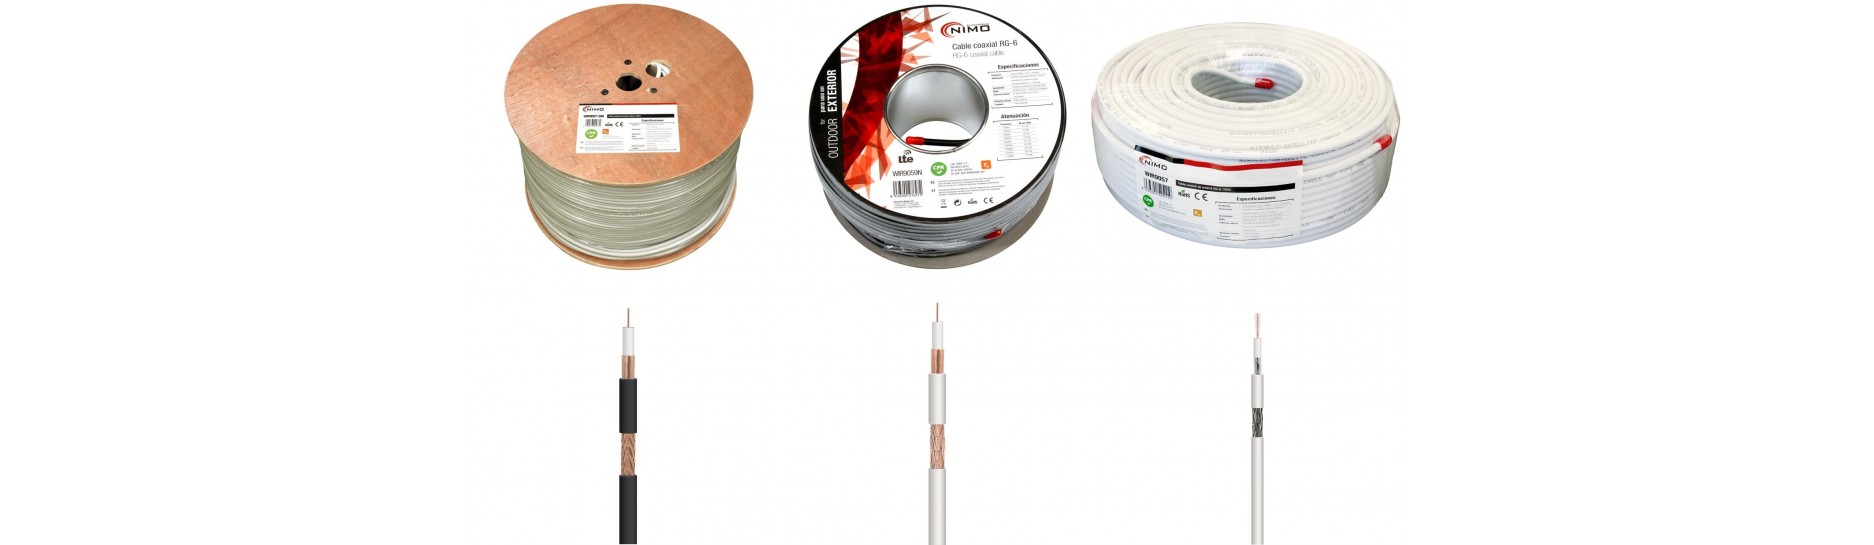 Rollos de Cable para Antena y RF | Comprar Rollos de Cable para Antena y RF